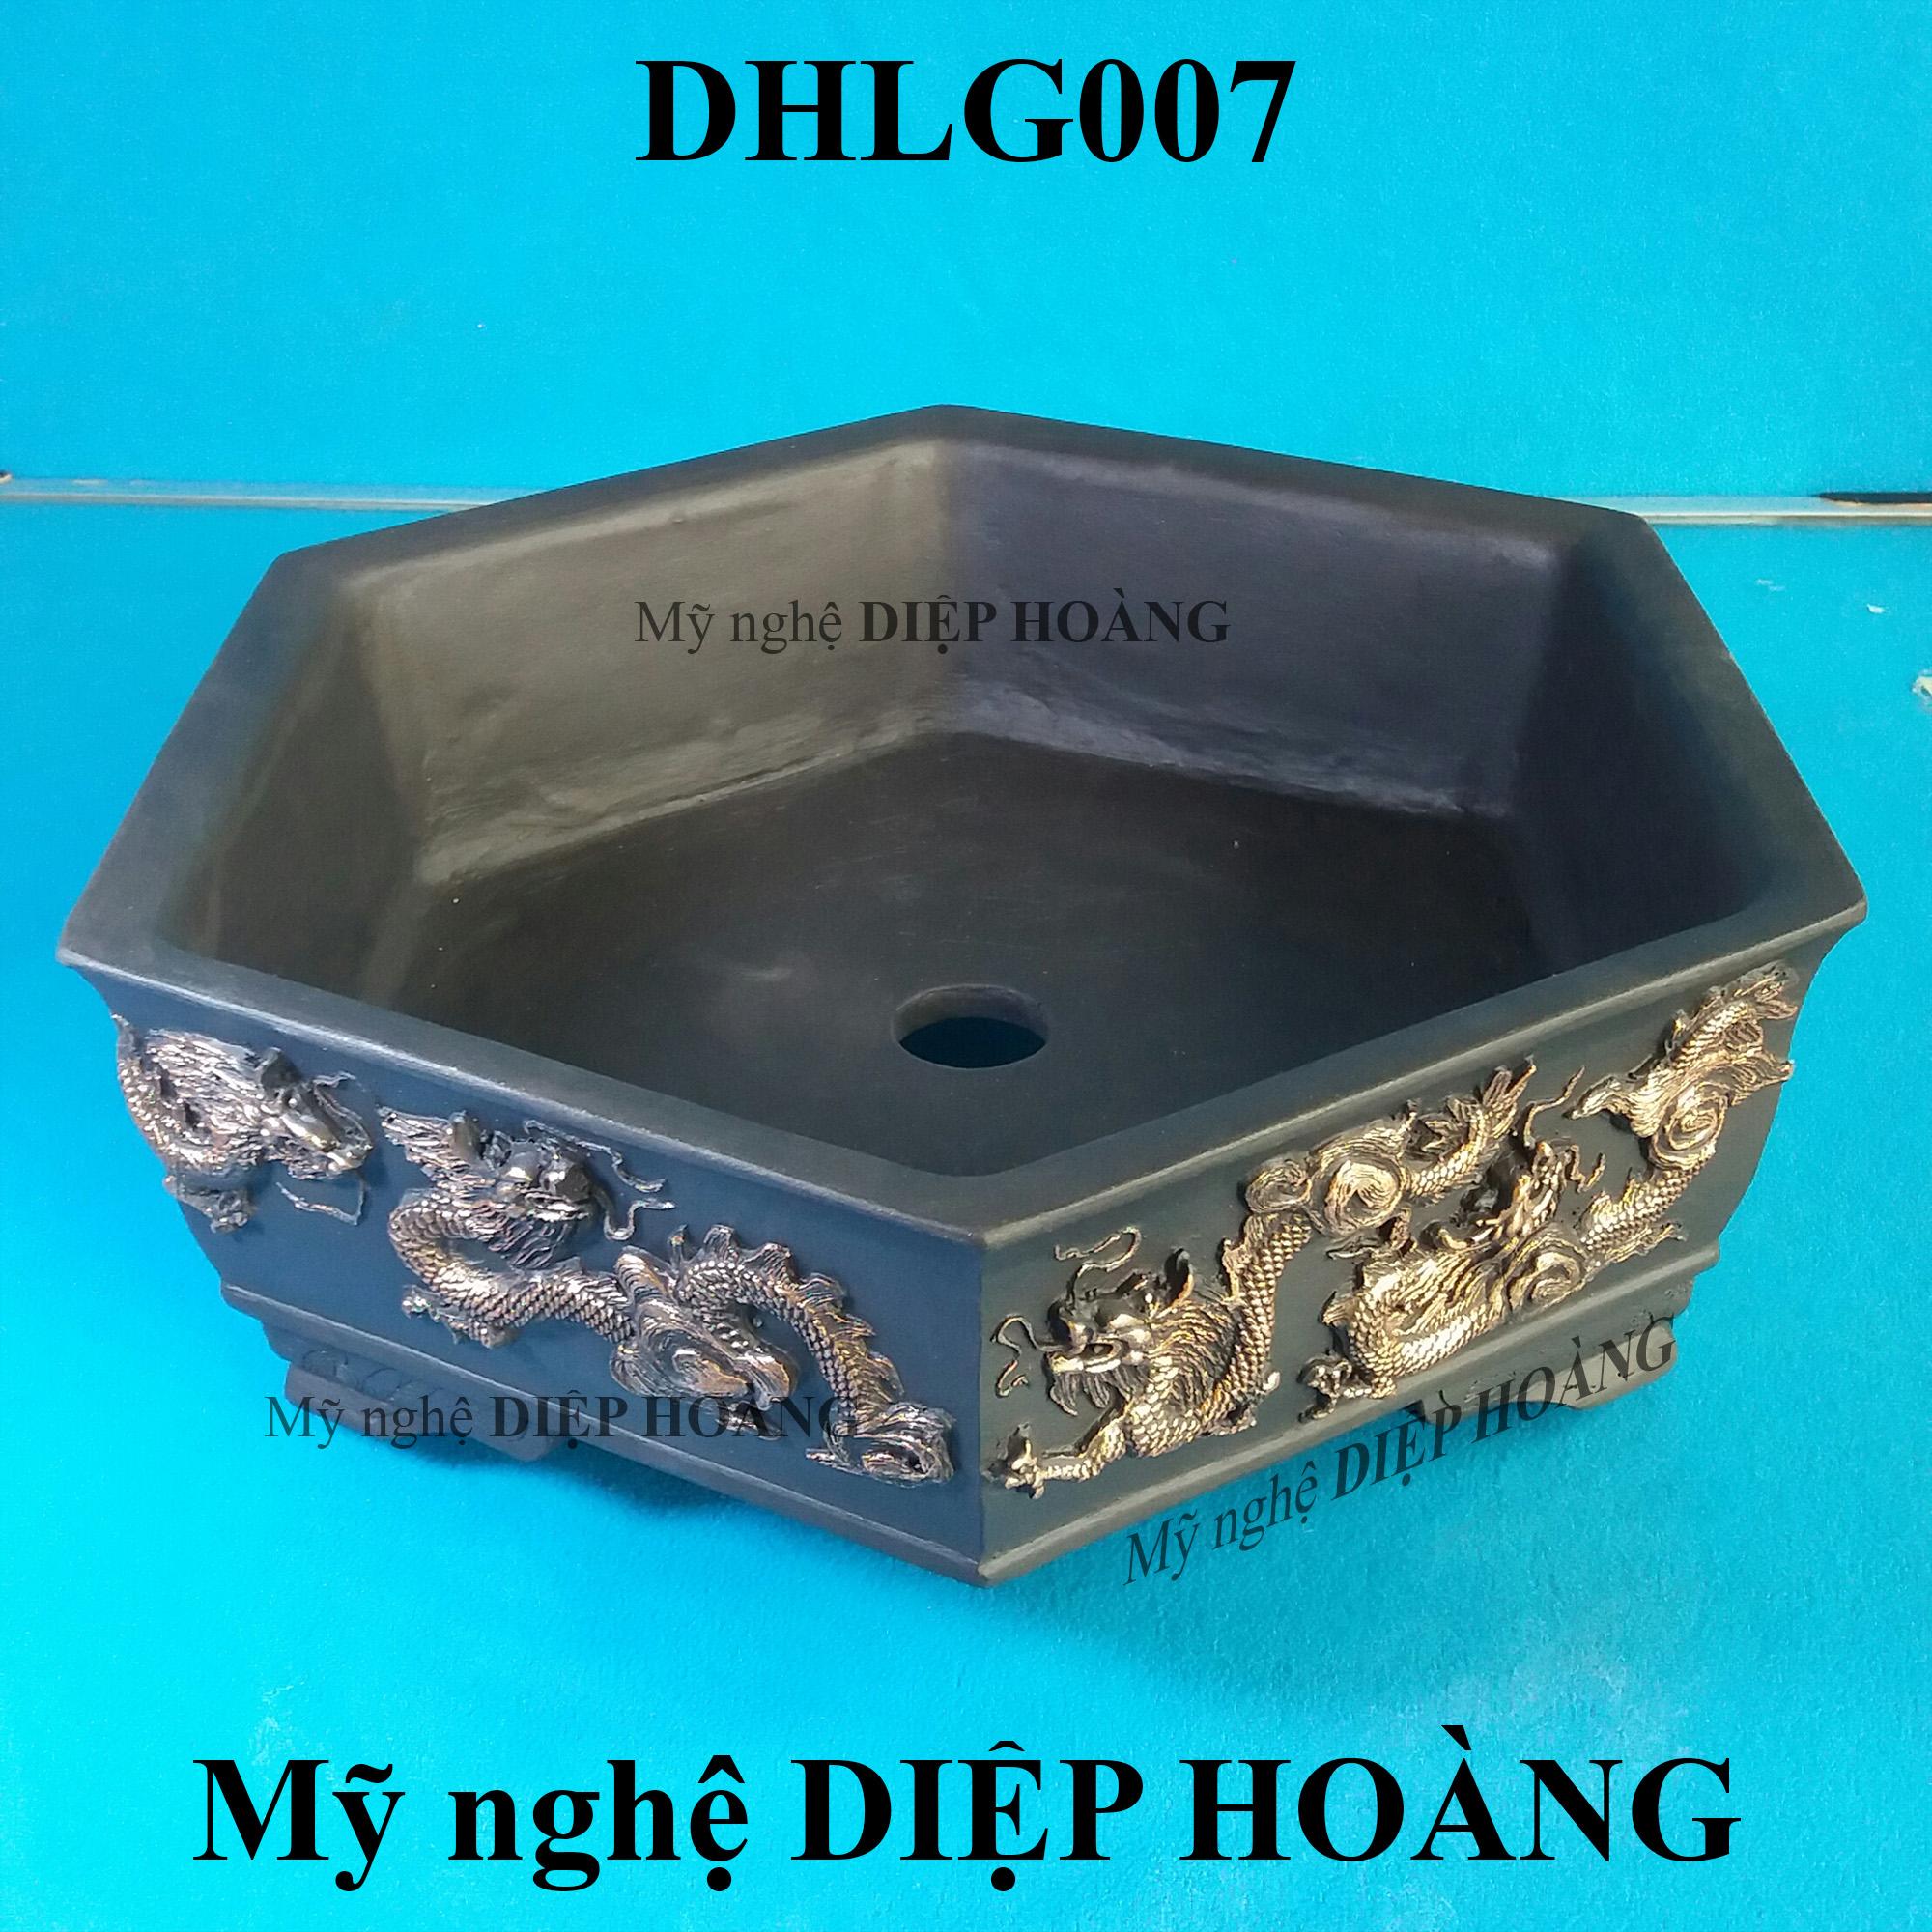 Chậu kiểng DIỆP HOÀNG - DHLG007